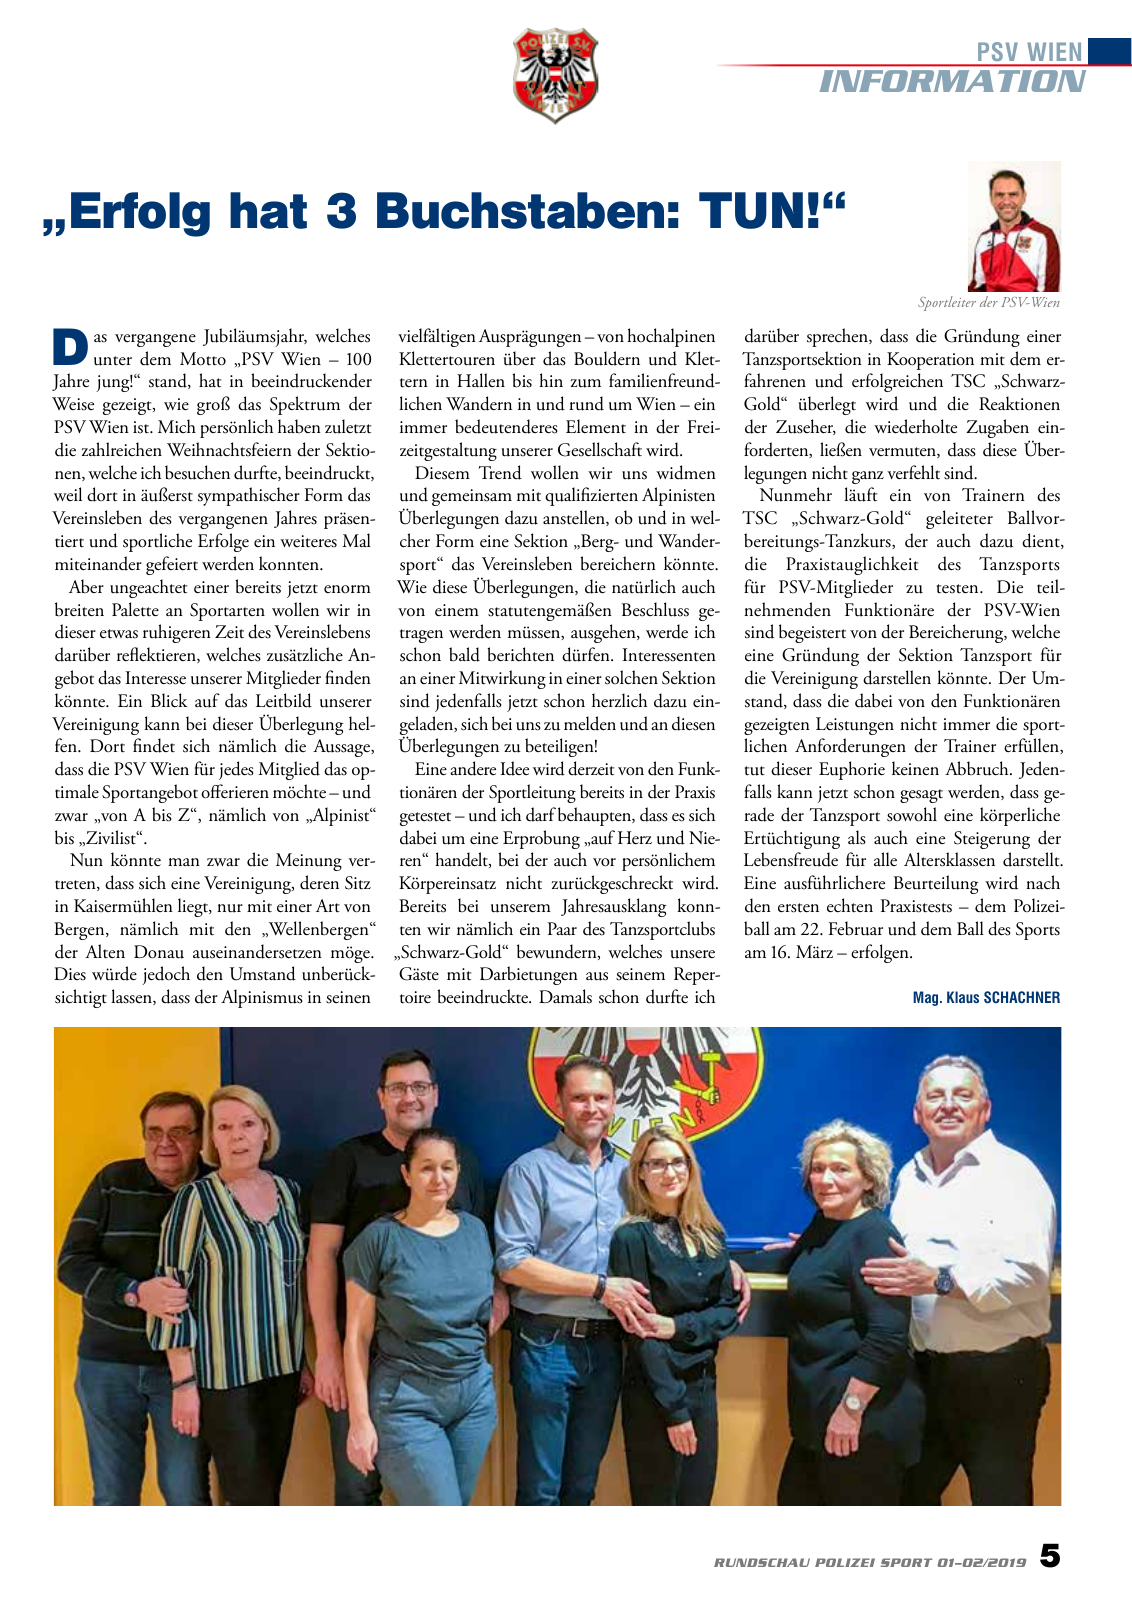 Vorschau Rundschau Polizei Sport 01-02/2019 Seite 5